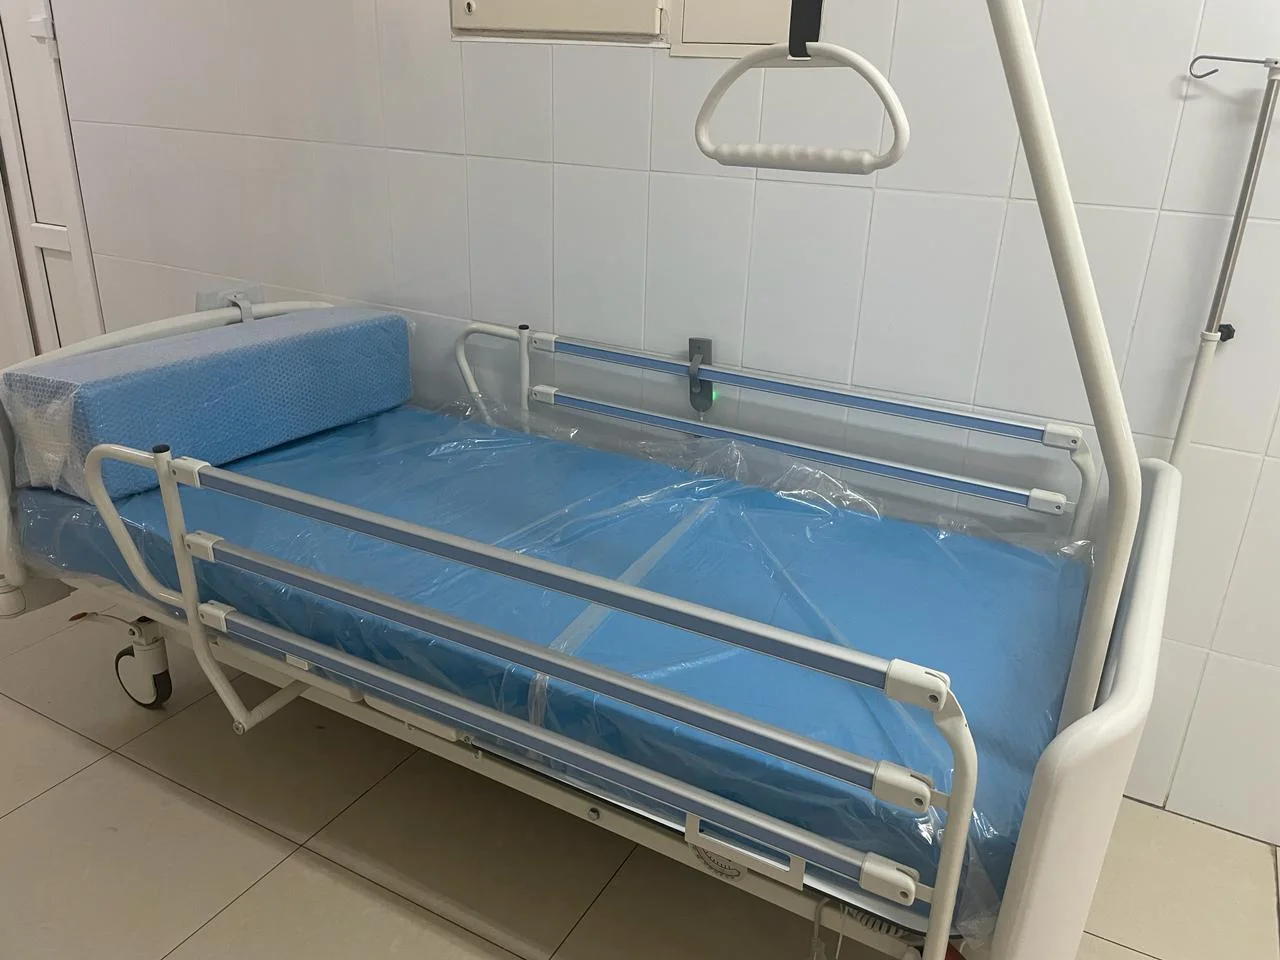 Черняховская больница получила пять функциональных кроватей